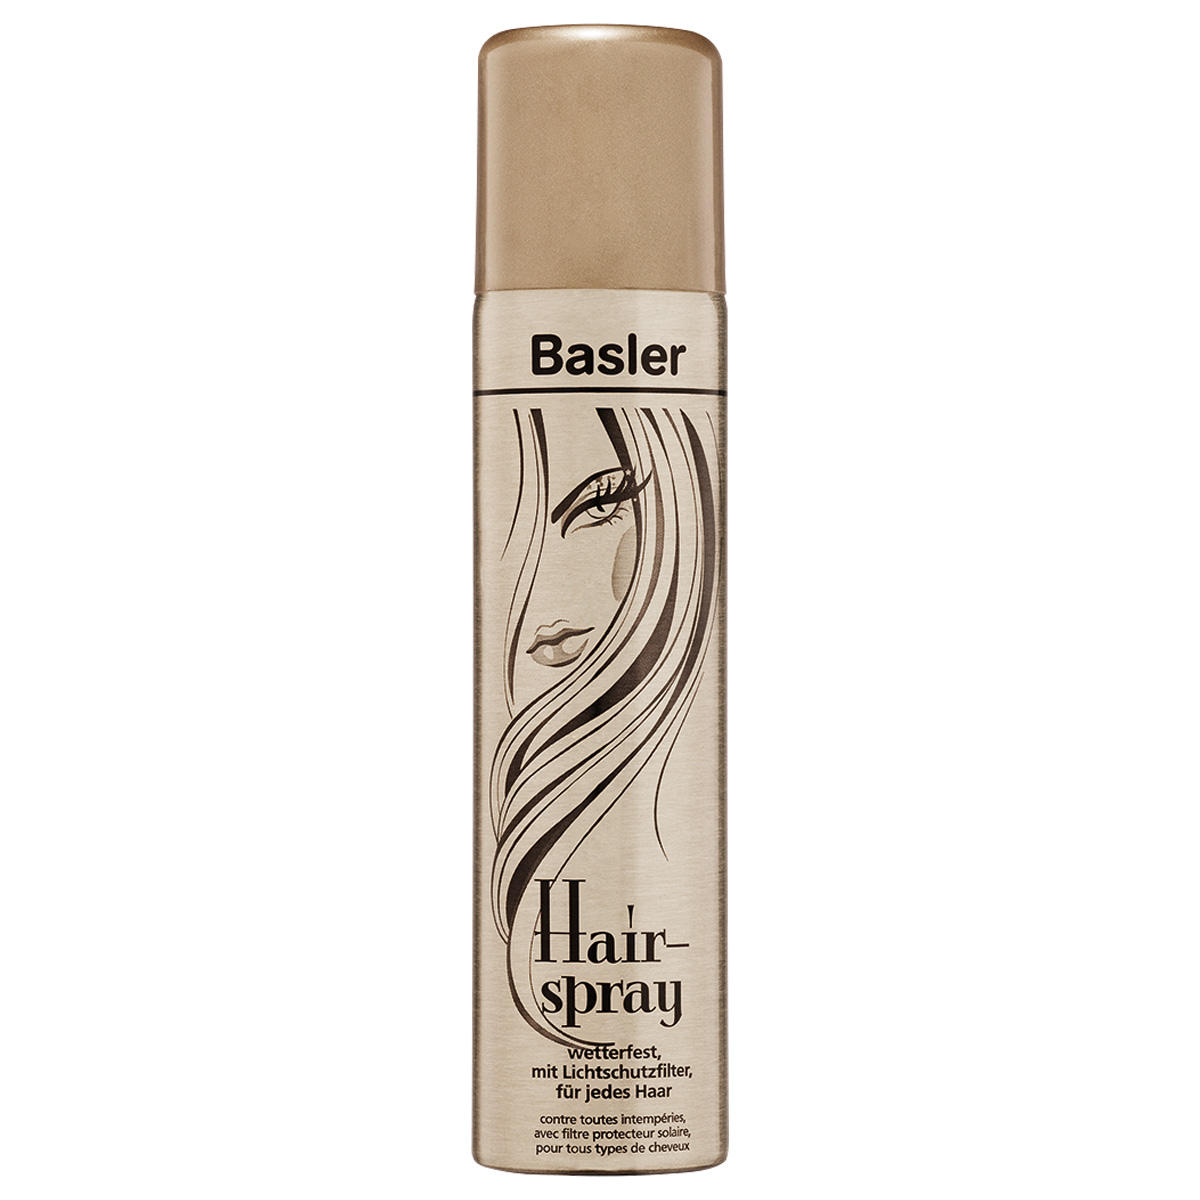 Basler Haarspray mit Lichtschutzfilter Aerosoldose 75 ml